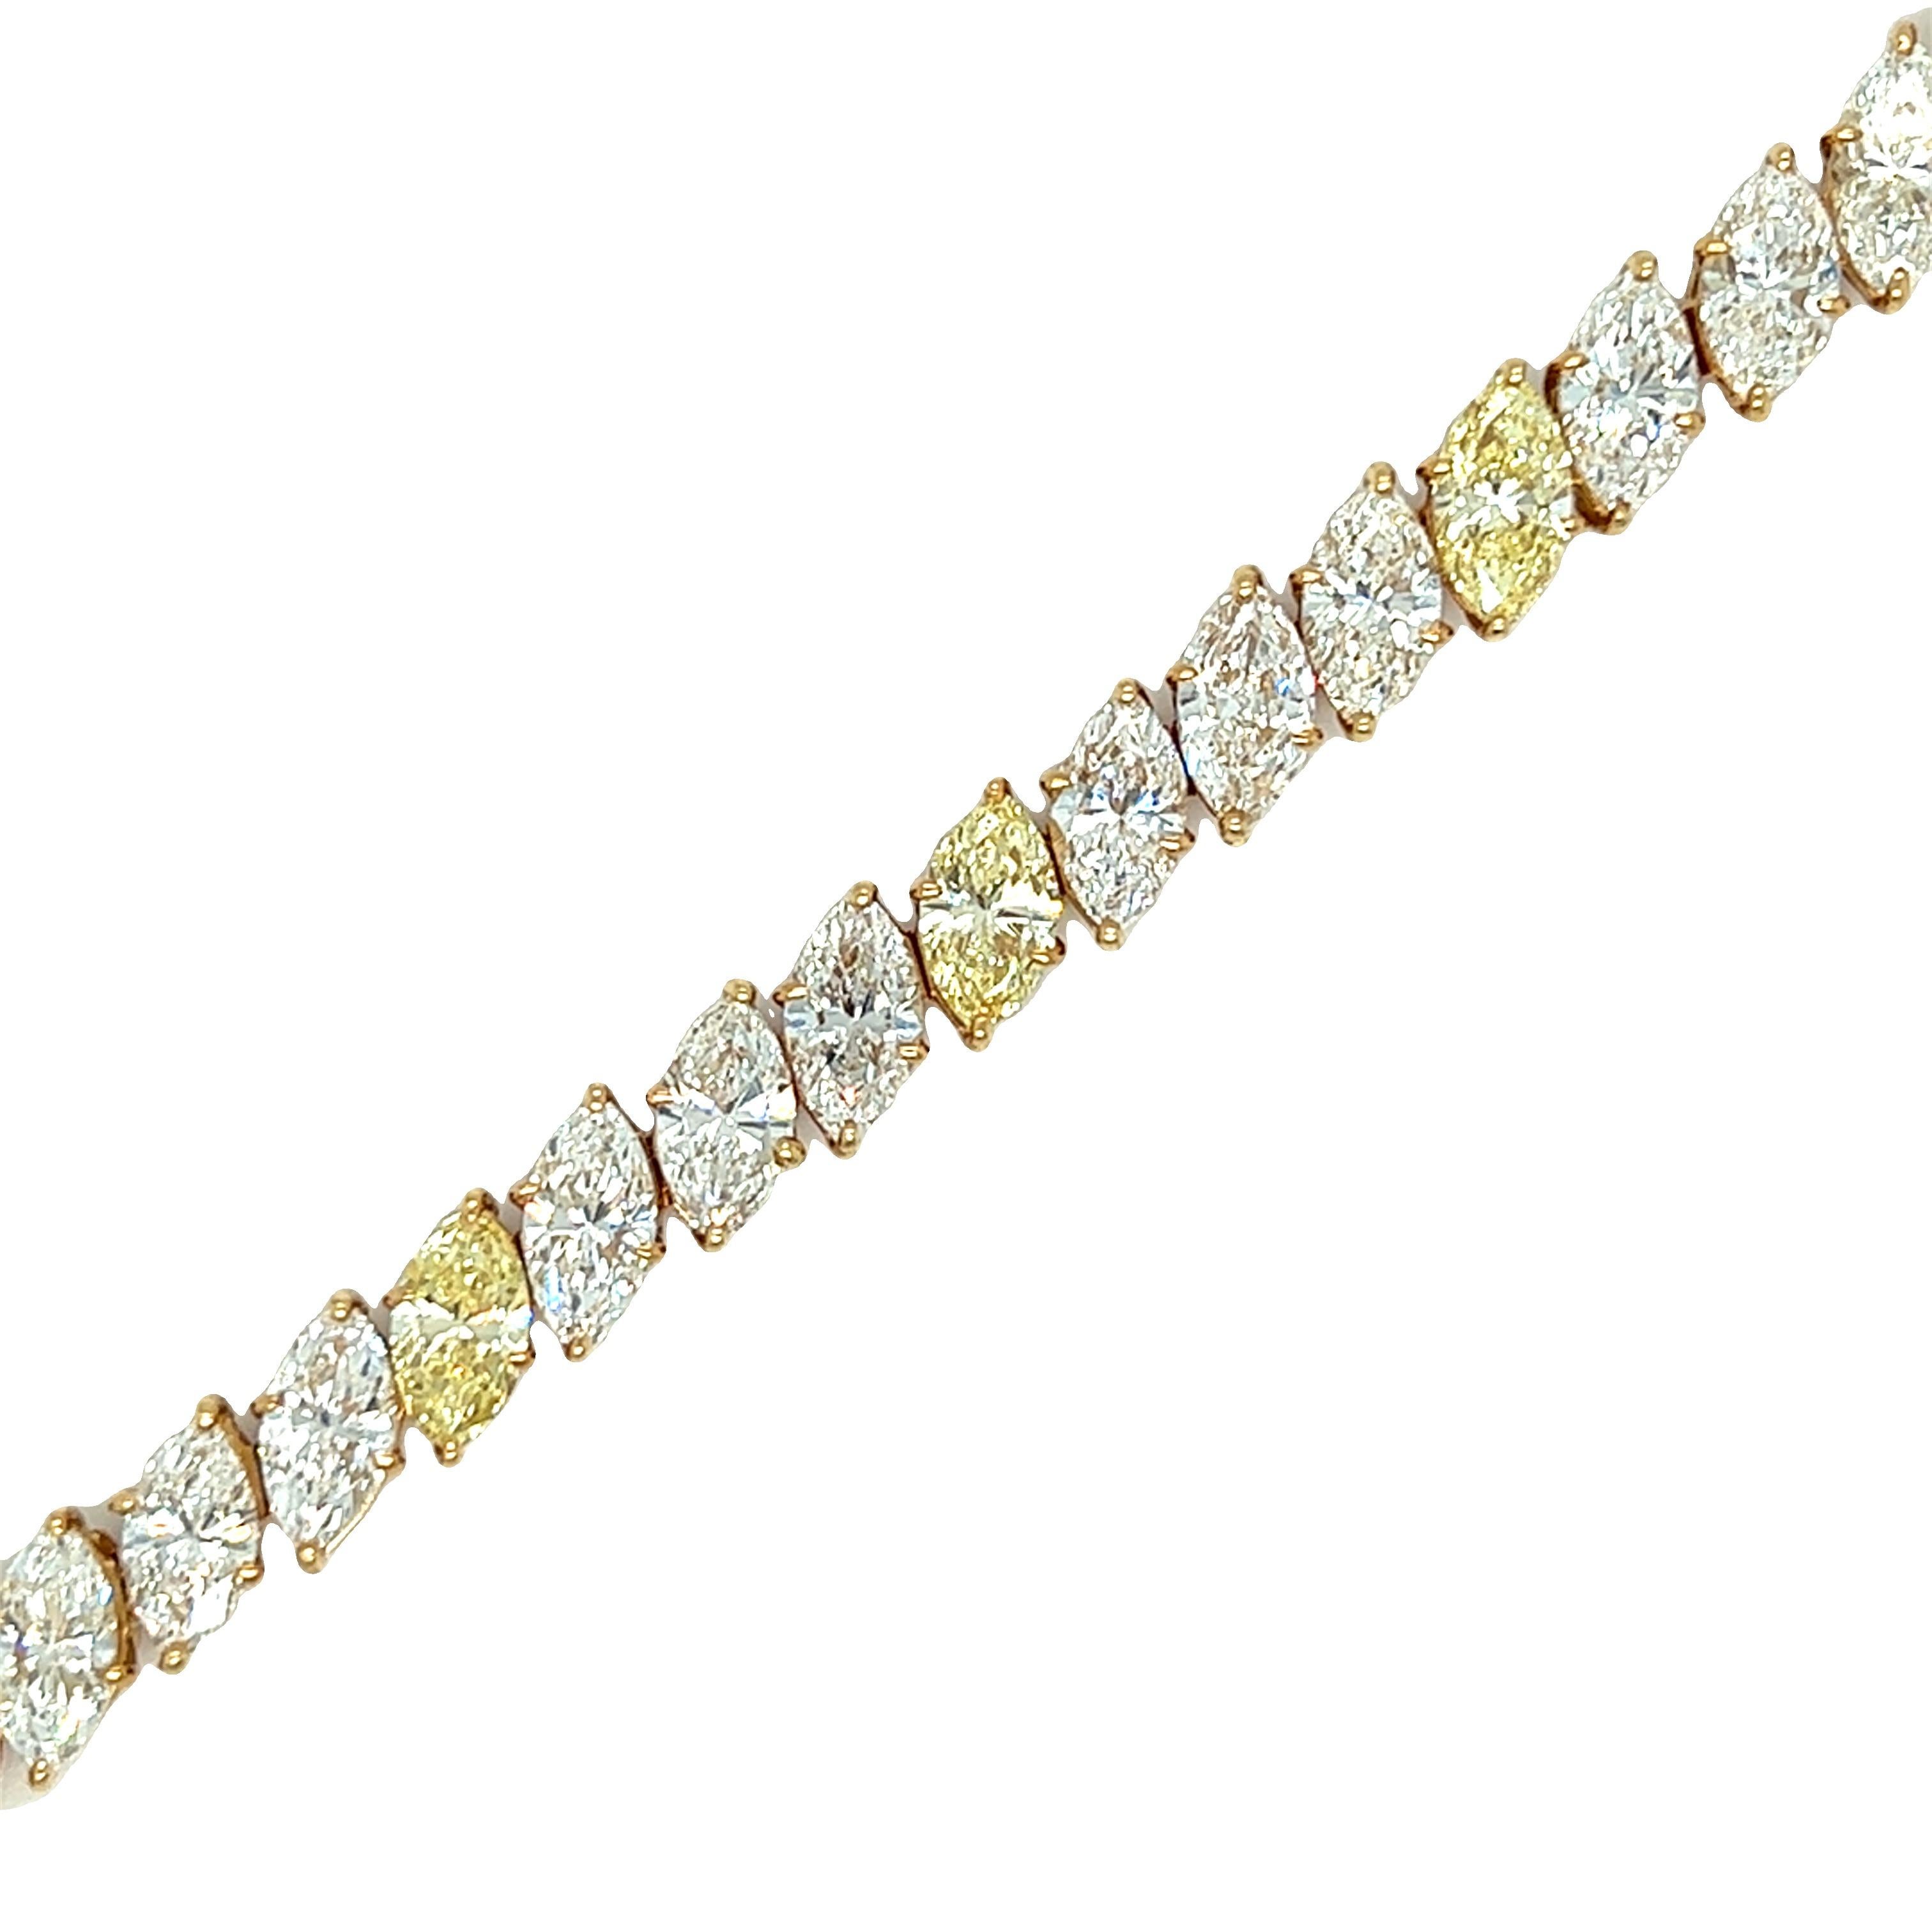 Dieses spektakuläre Harry Winston-Armband gehört zu unserer bedeutenden Juwelenkollektion und ist selbst in der High-End-Kollektion ein seltenes Stück. Das HW-Armband präsentiert 24 marquiseförmige farblose Diamanten mit einem geschätzten Farbwert